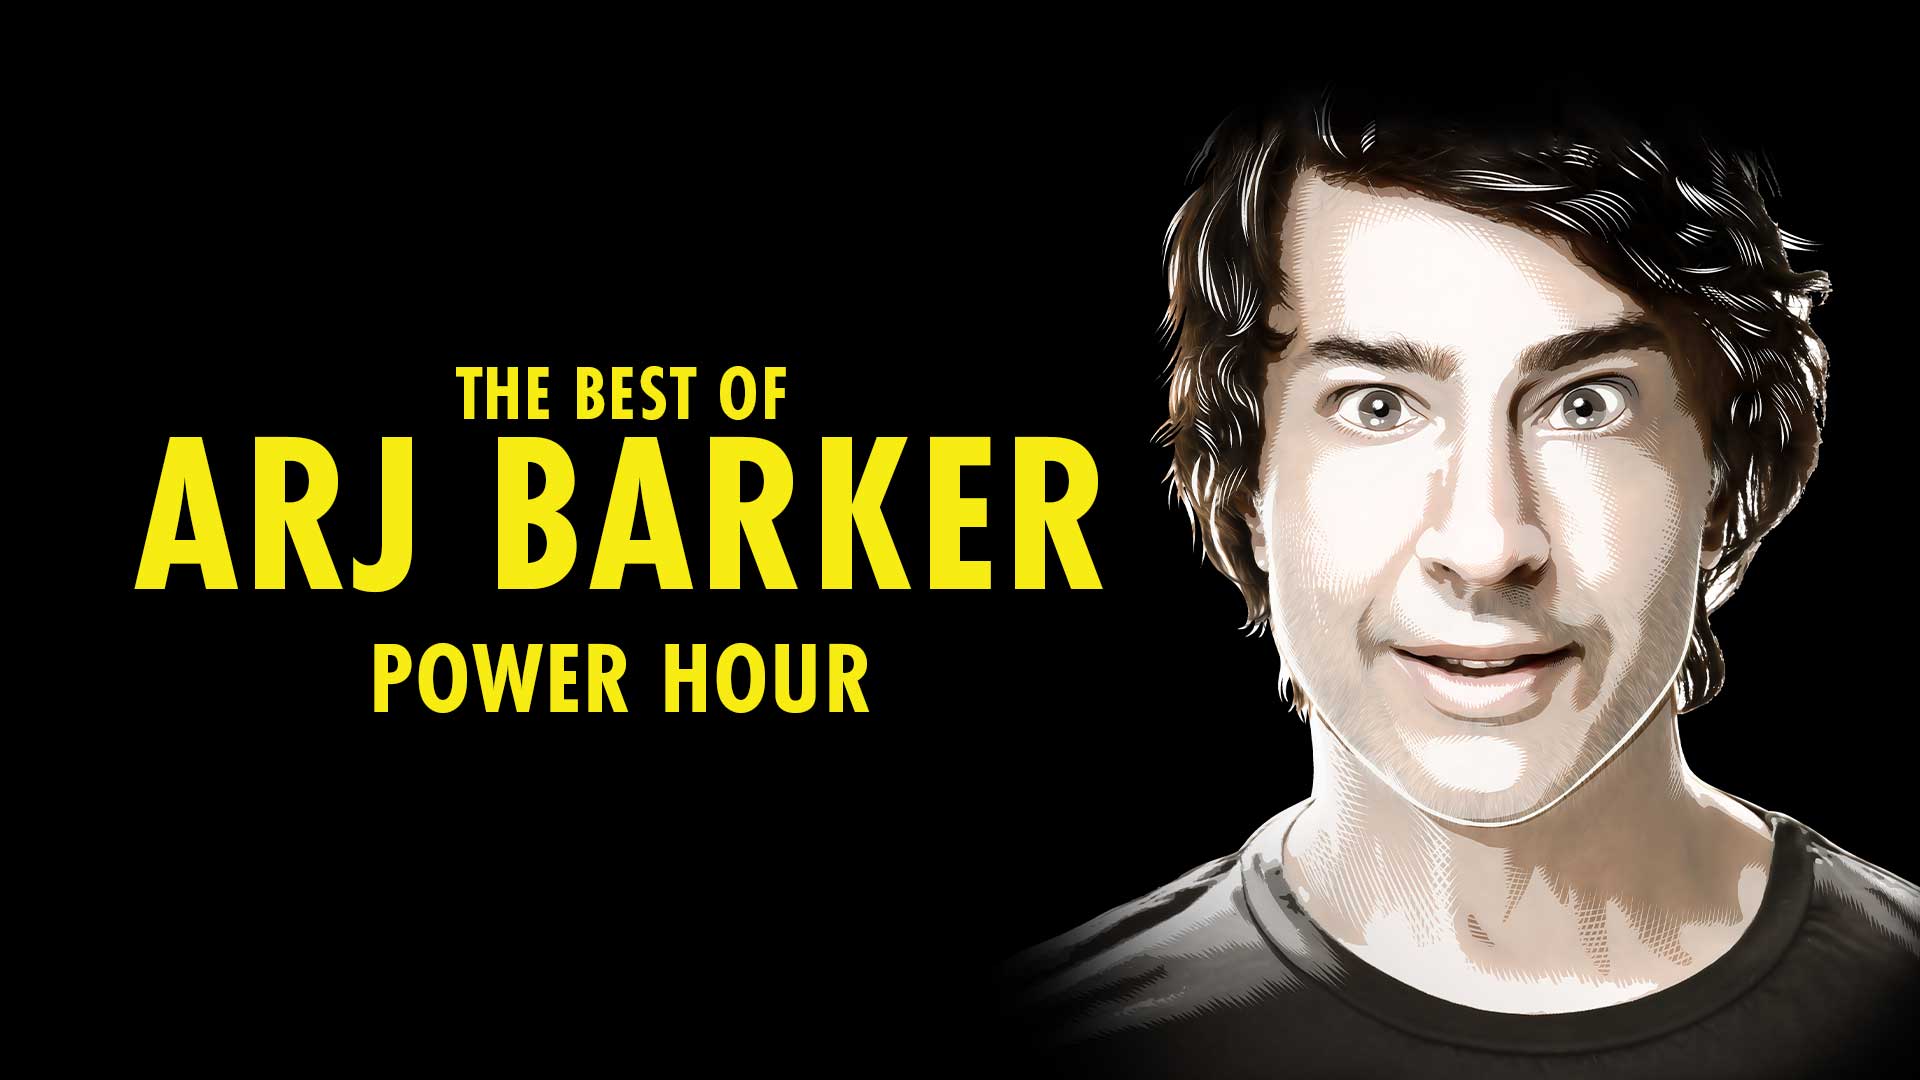 The Best of Arj Barker | Power Hour